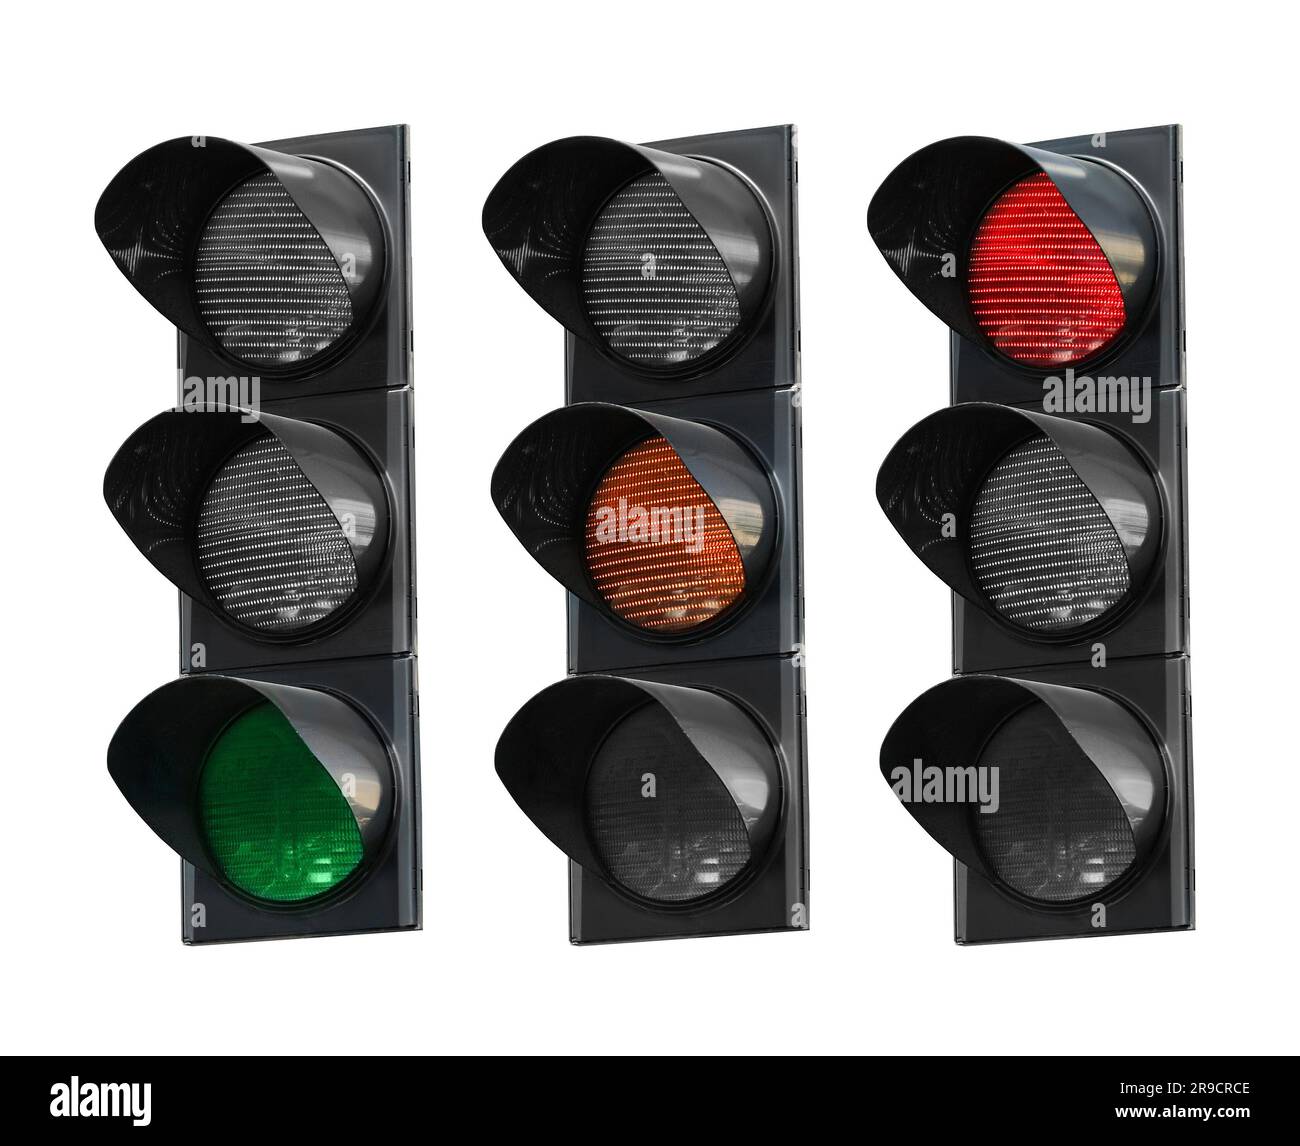 Collage des signaux de signalisation avec différents voyants lumineux (rouge, orange, vert) isolés en blanc Banque D'Images